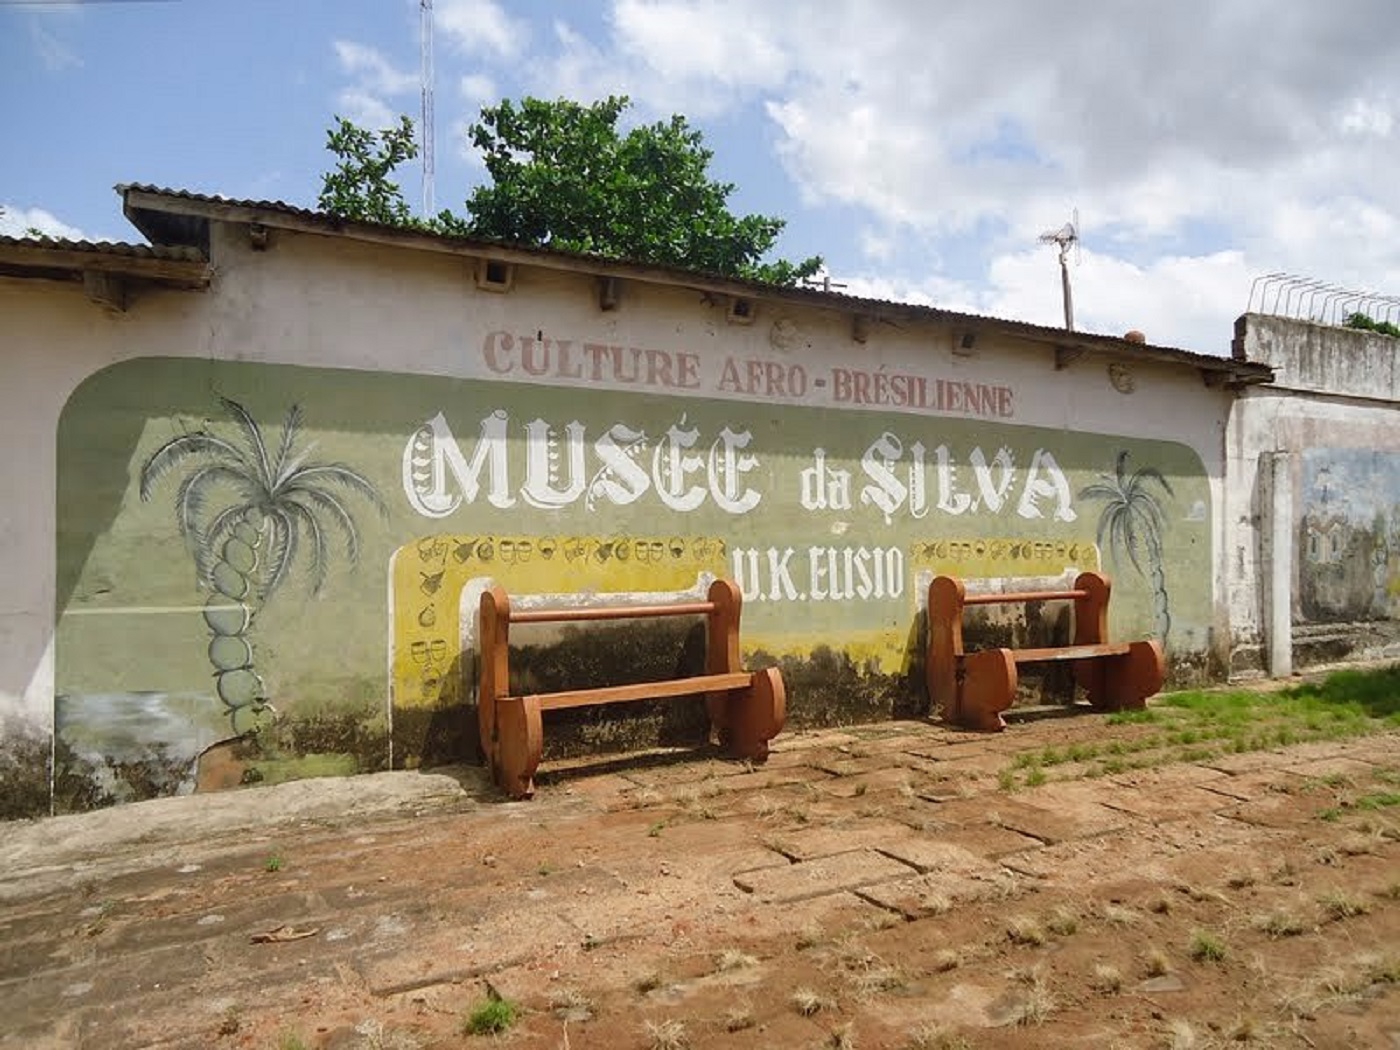 Le musée DA SILVA des Arts et de la Culture de Porto-Novo | Express Tourisme Bénin